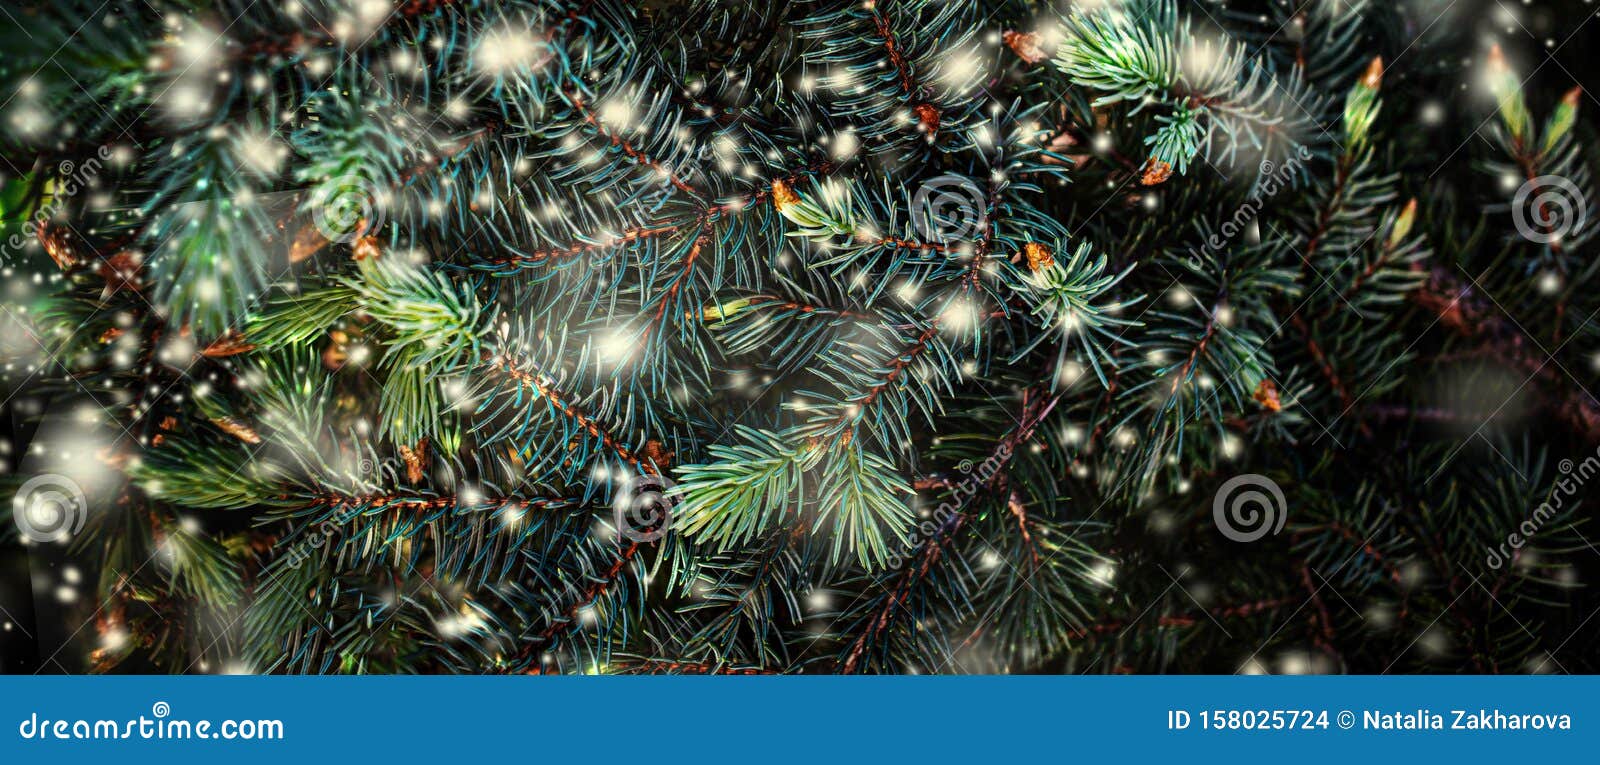 Merry Christmas HD Wallpapers  Top Những Hình Ảnh Đẹp